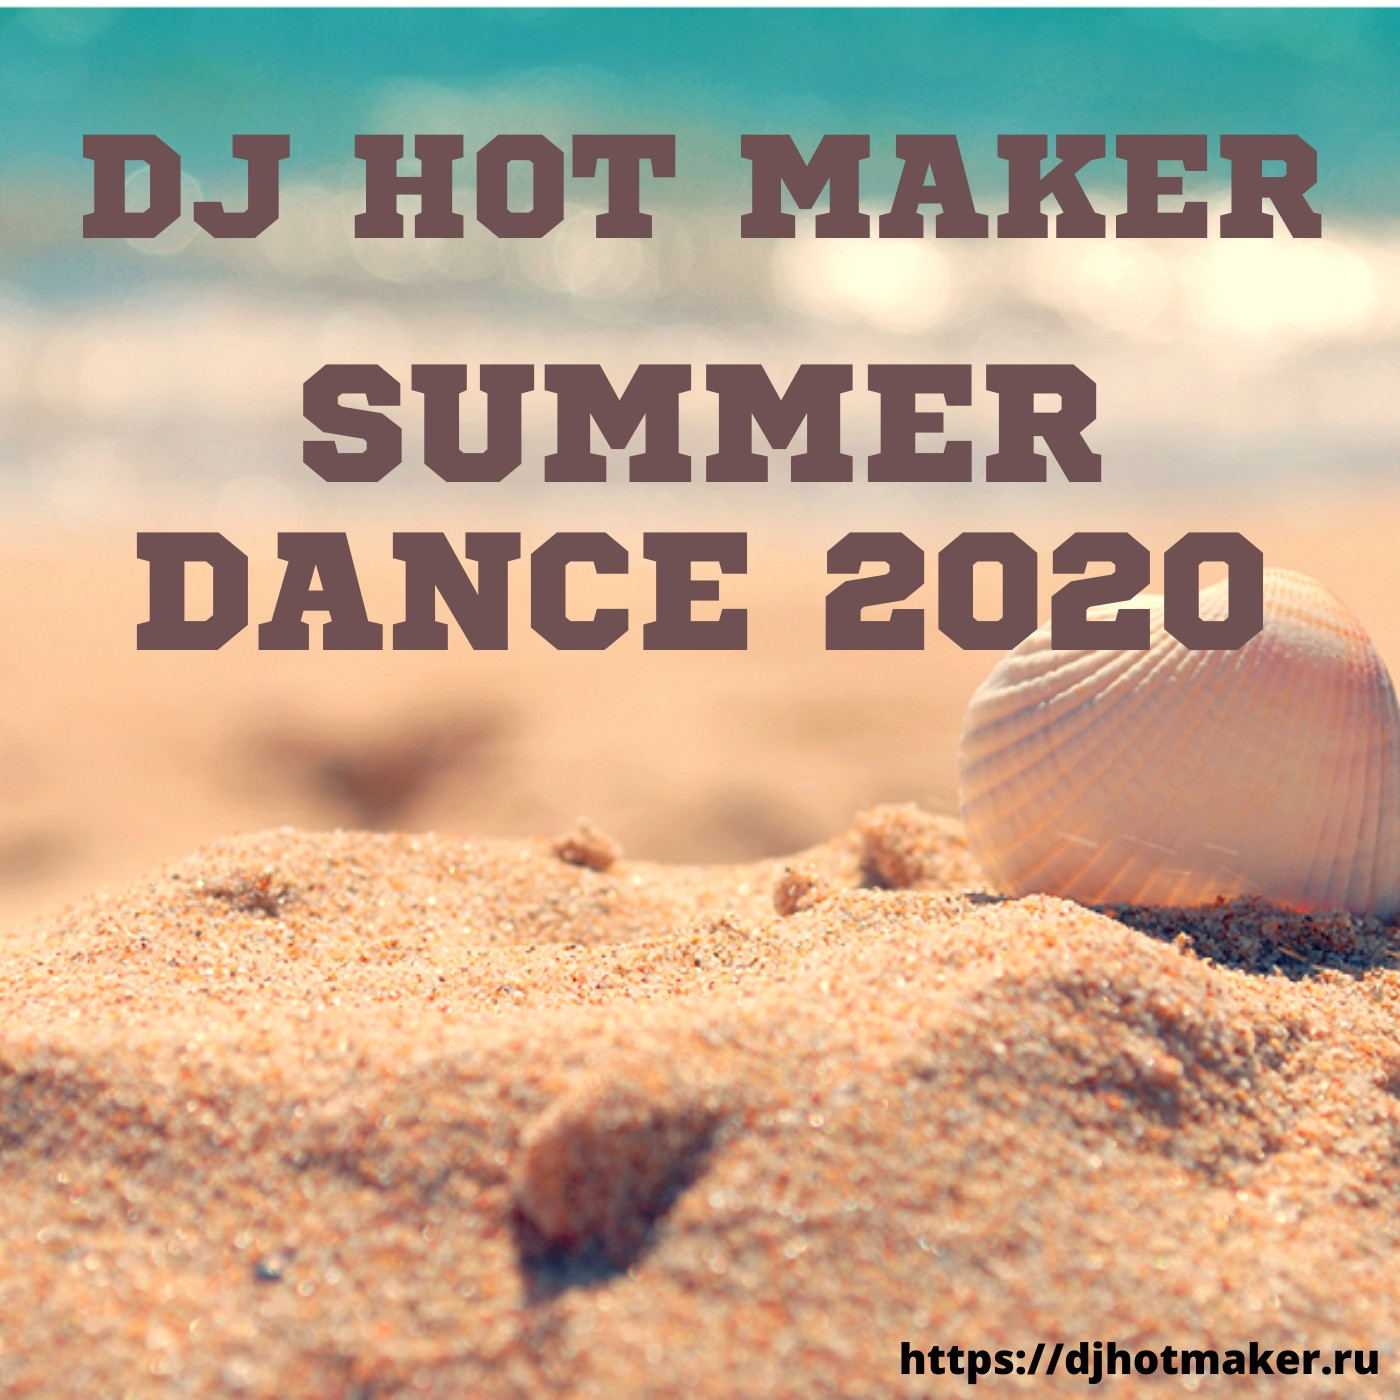 DJ Hot Maker - Summer Dance 2020